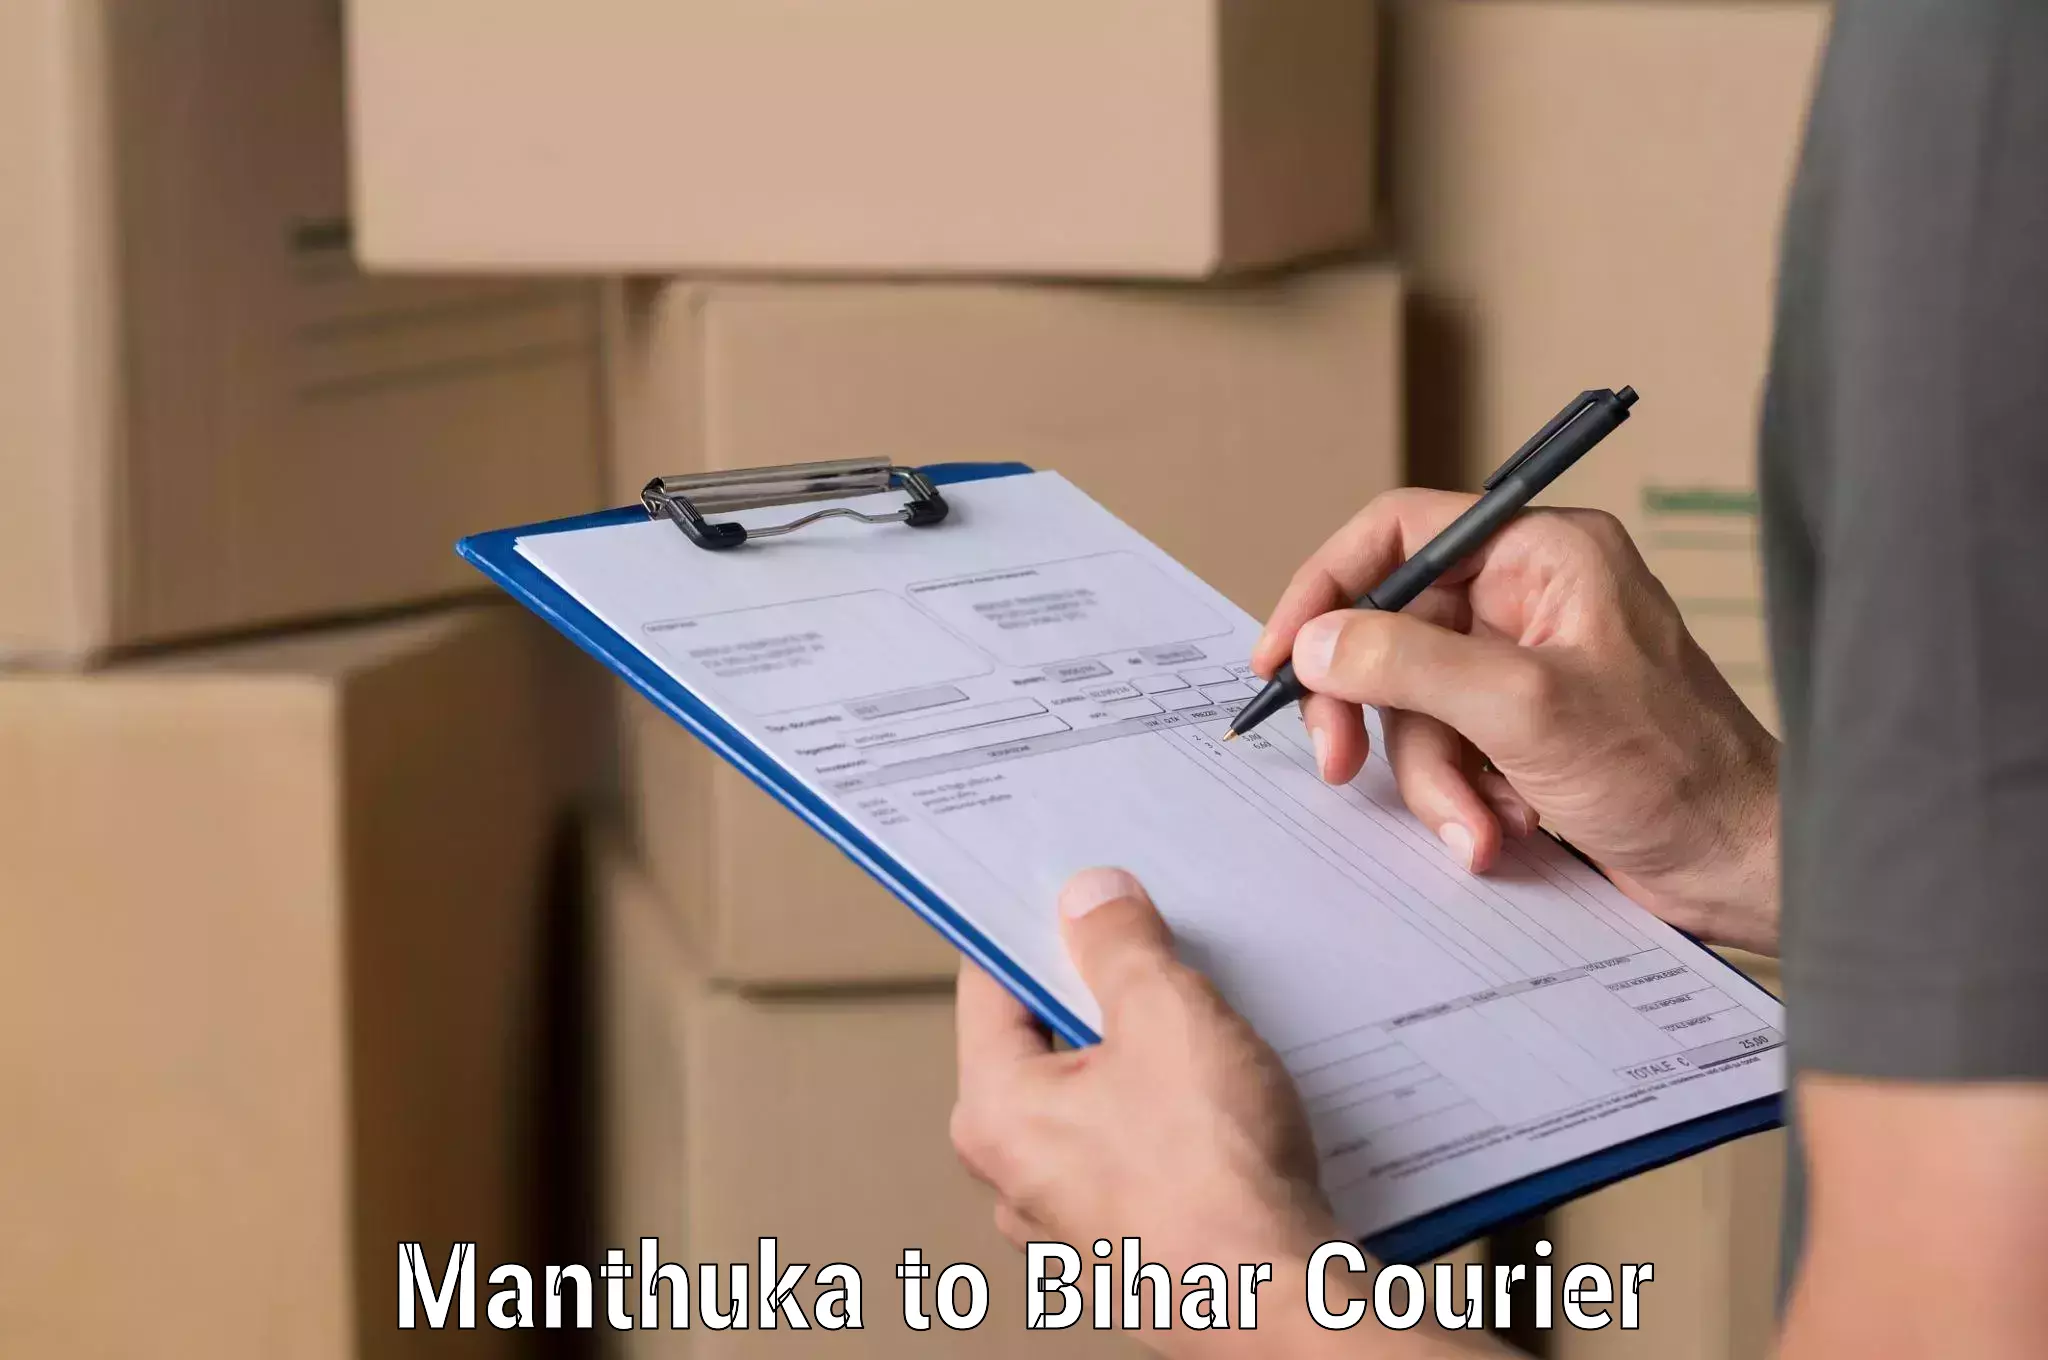 Urban courier service Manthuka to Bihar